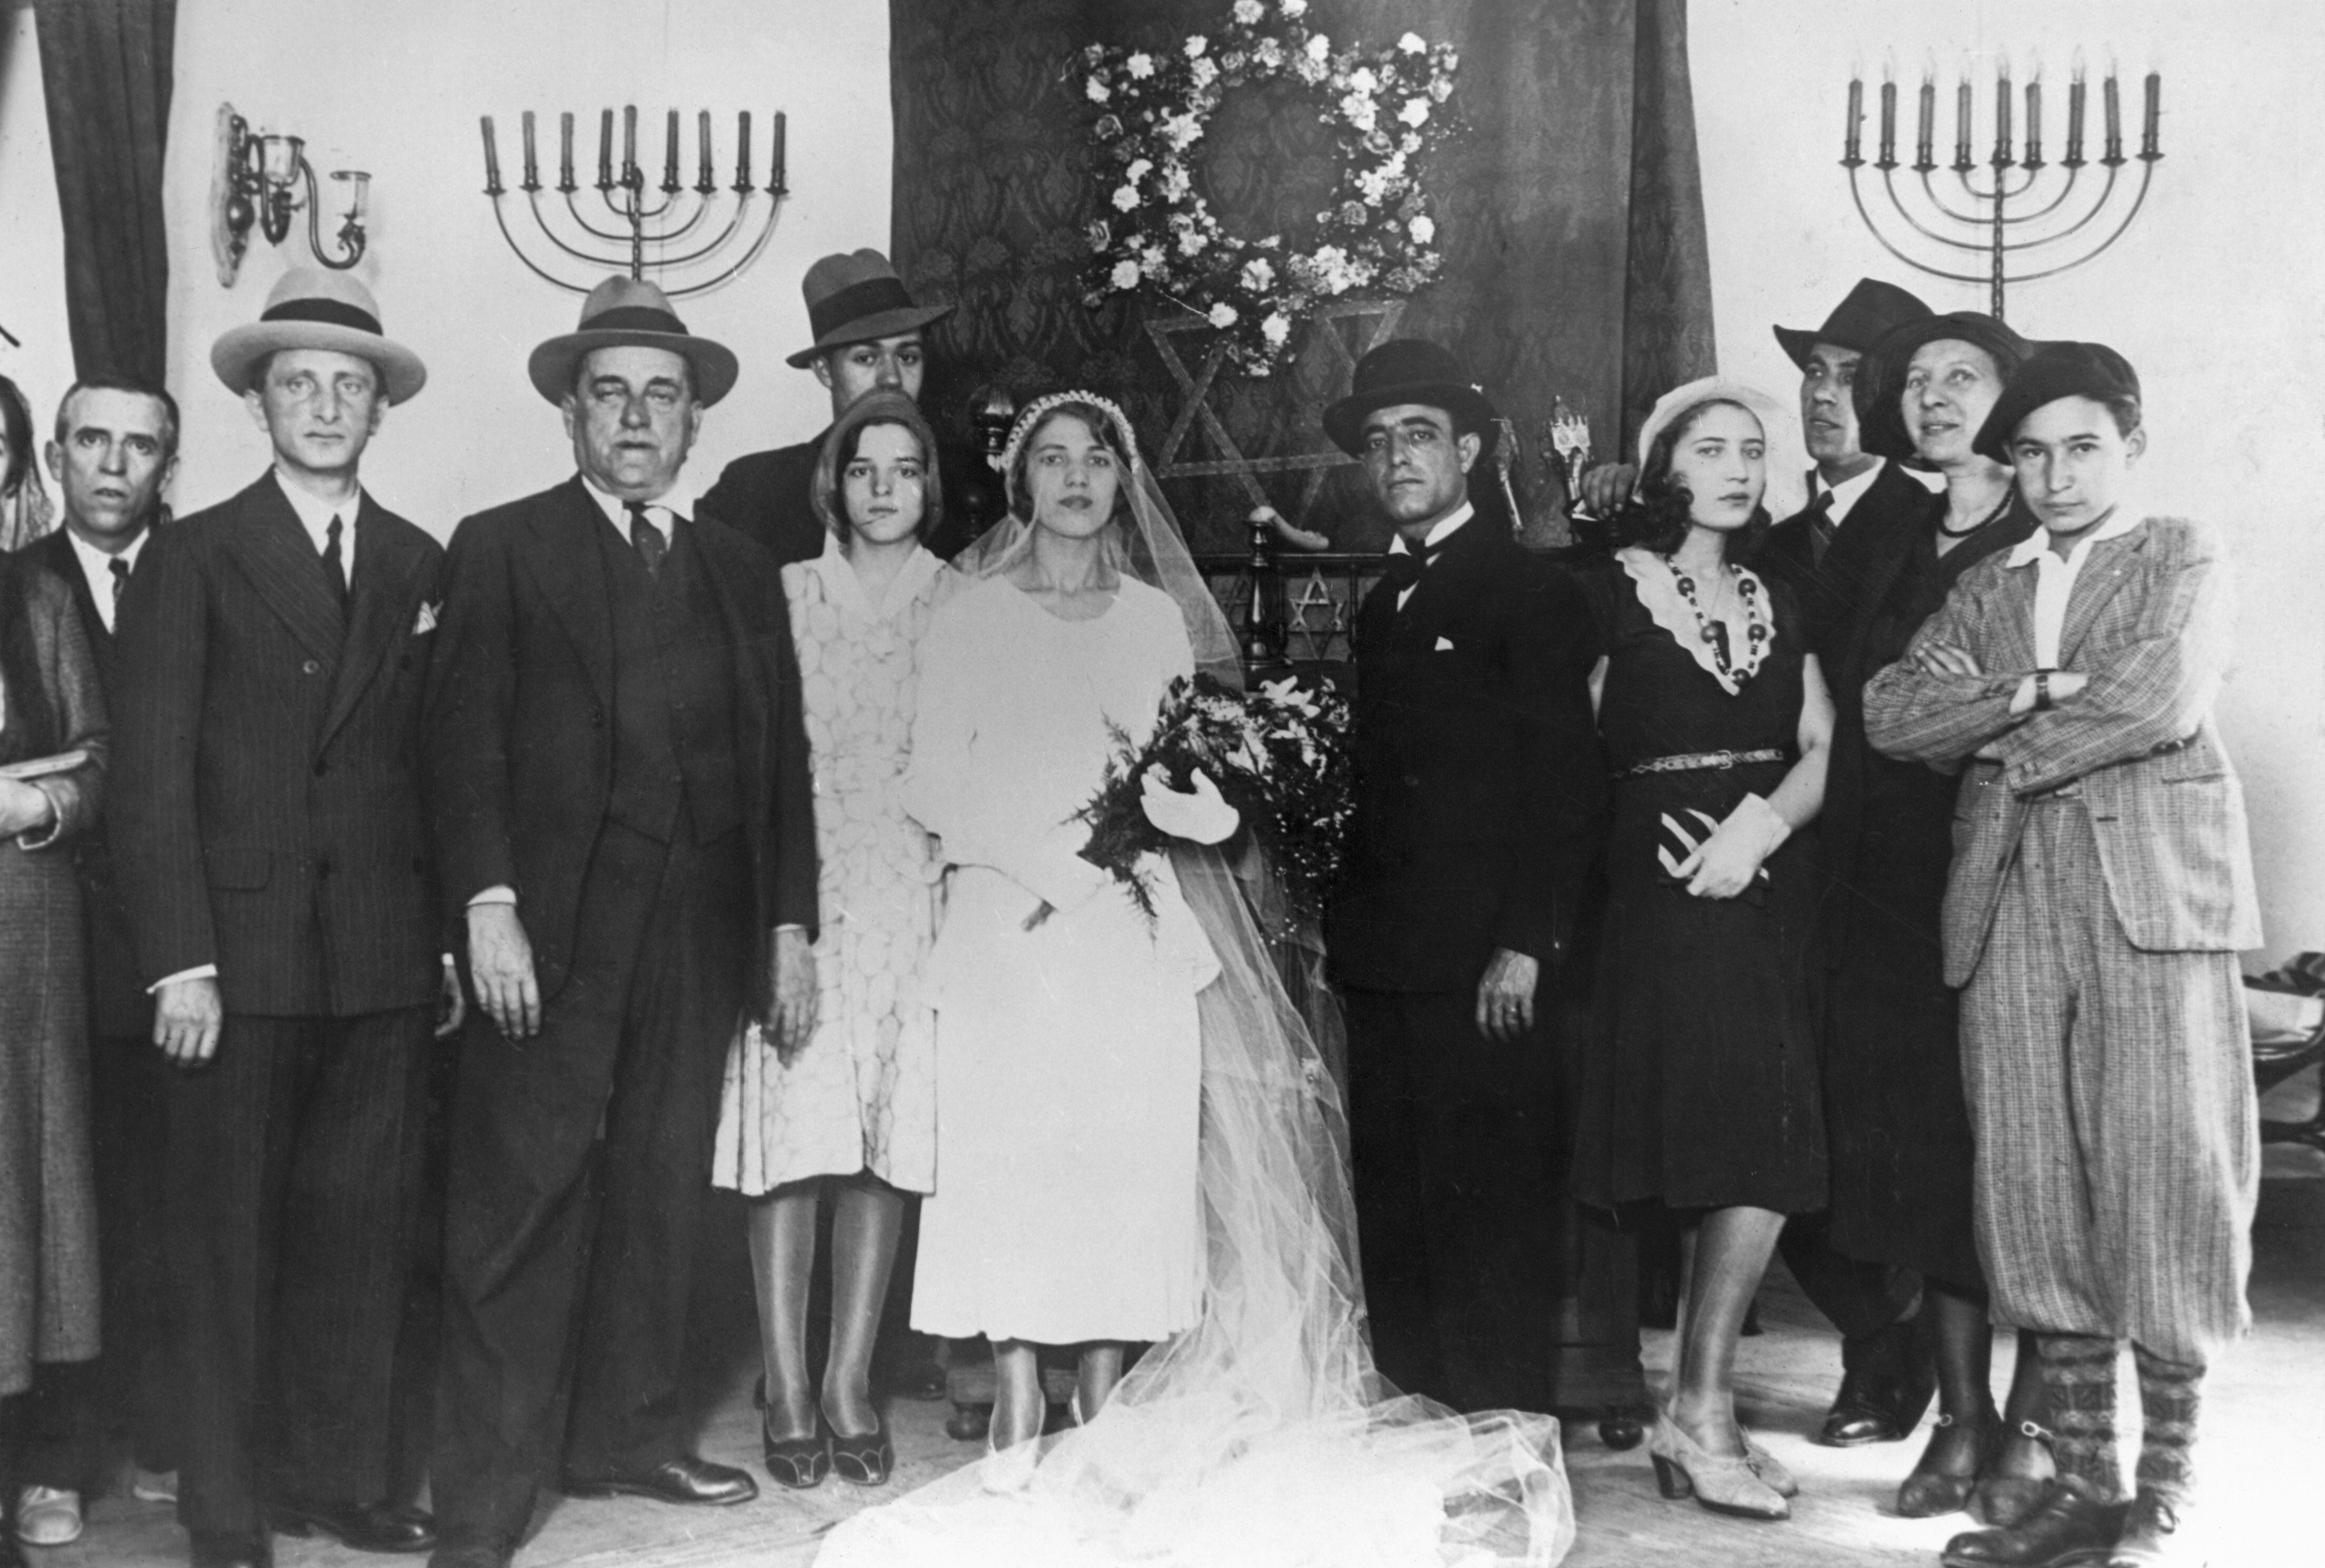 Imagen sin fechar de la primera boda entre judíos celebrada en España desde su expulsión por los Reyes Católicos. La ceremonia tuvo lugar en Madrid.